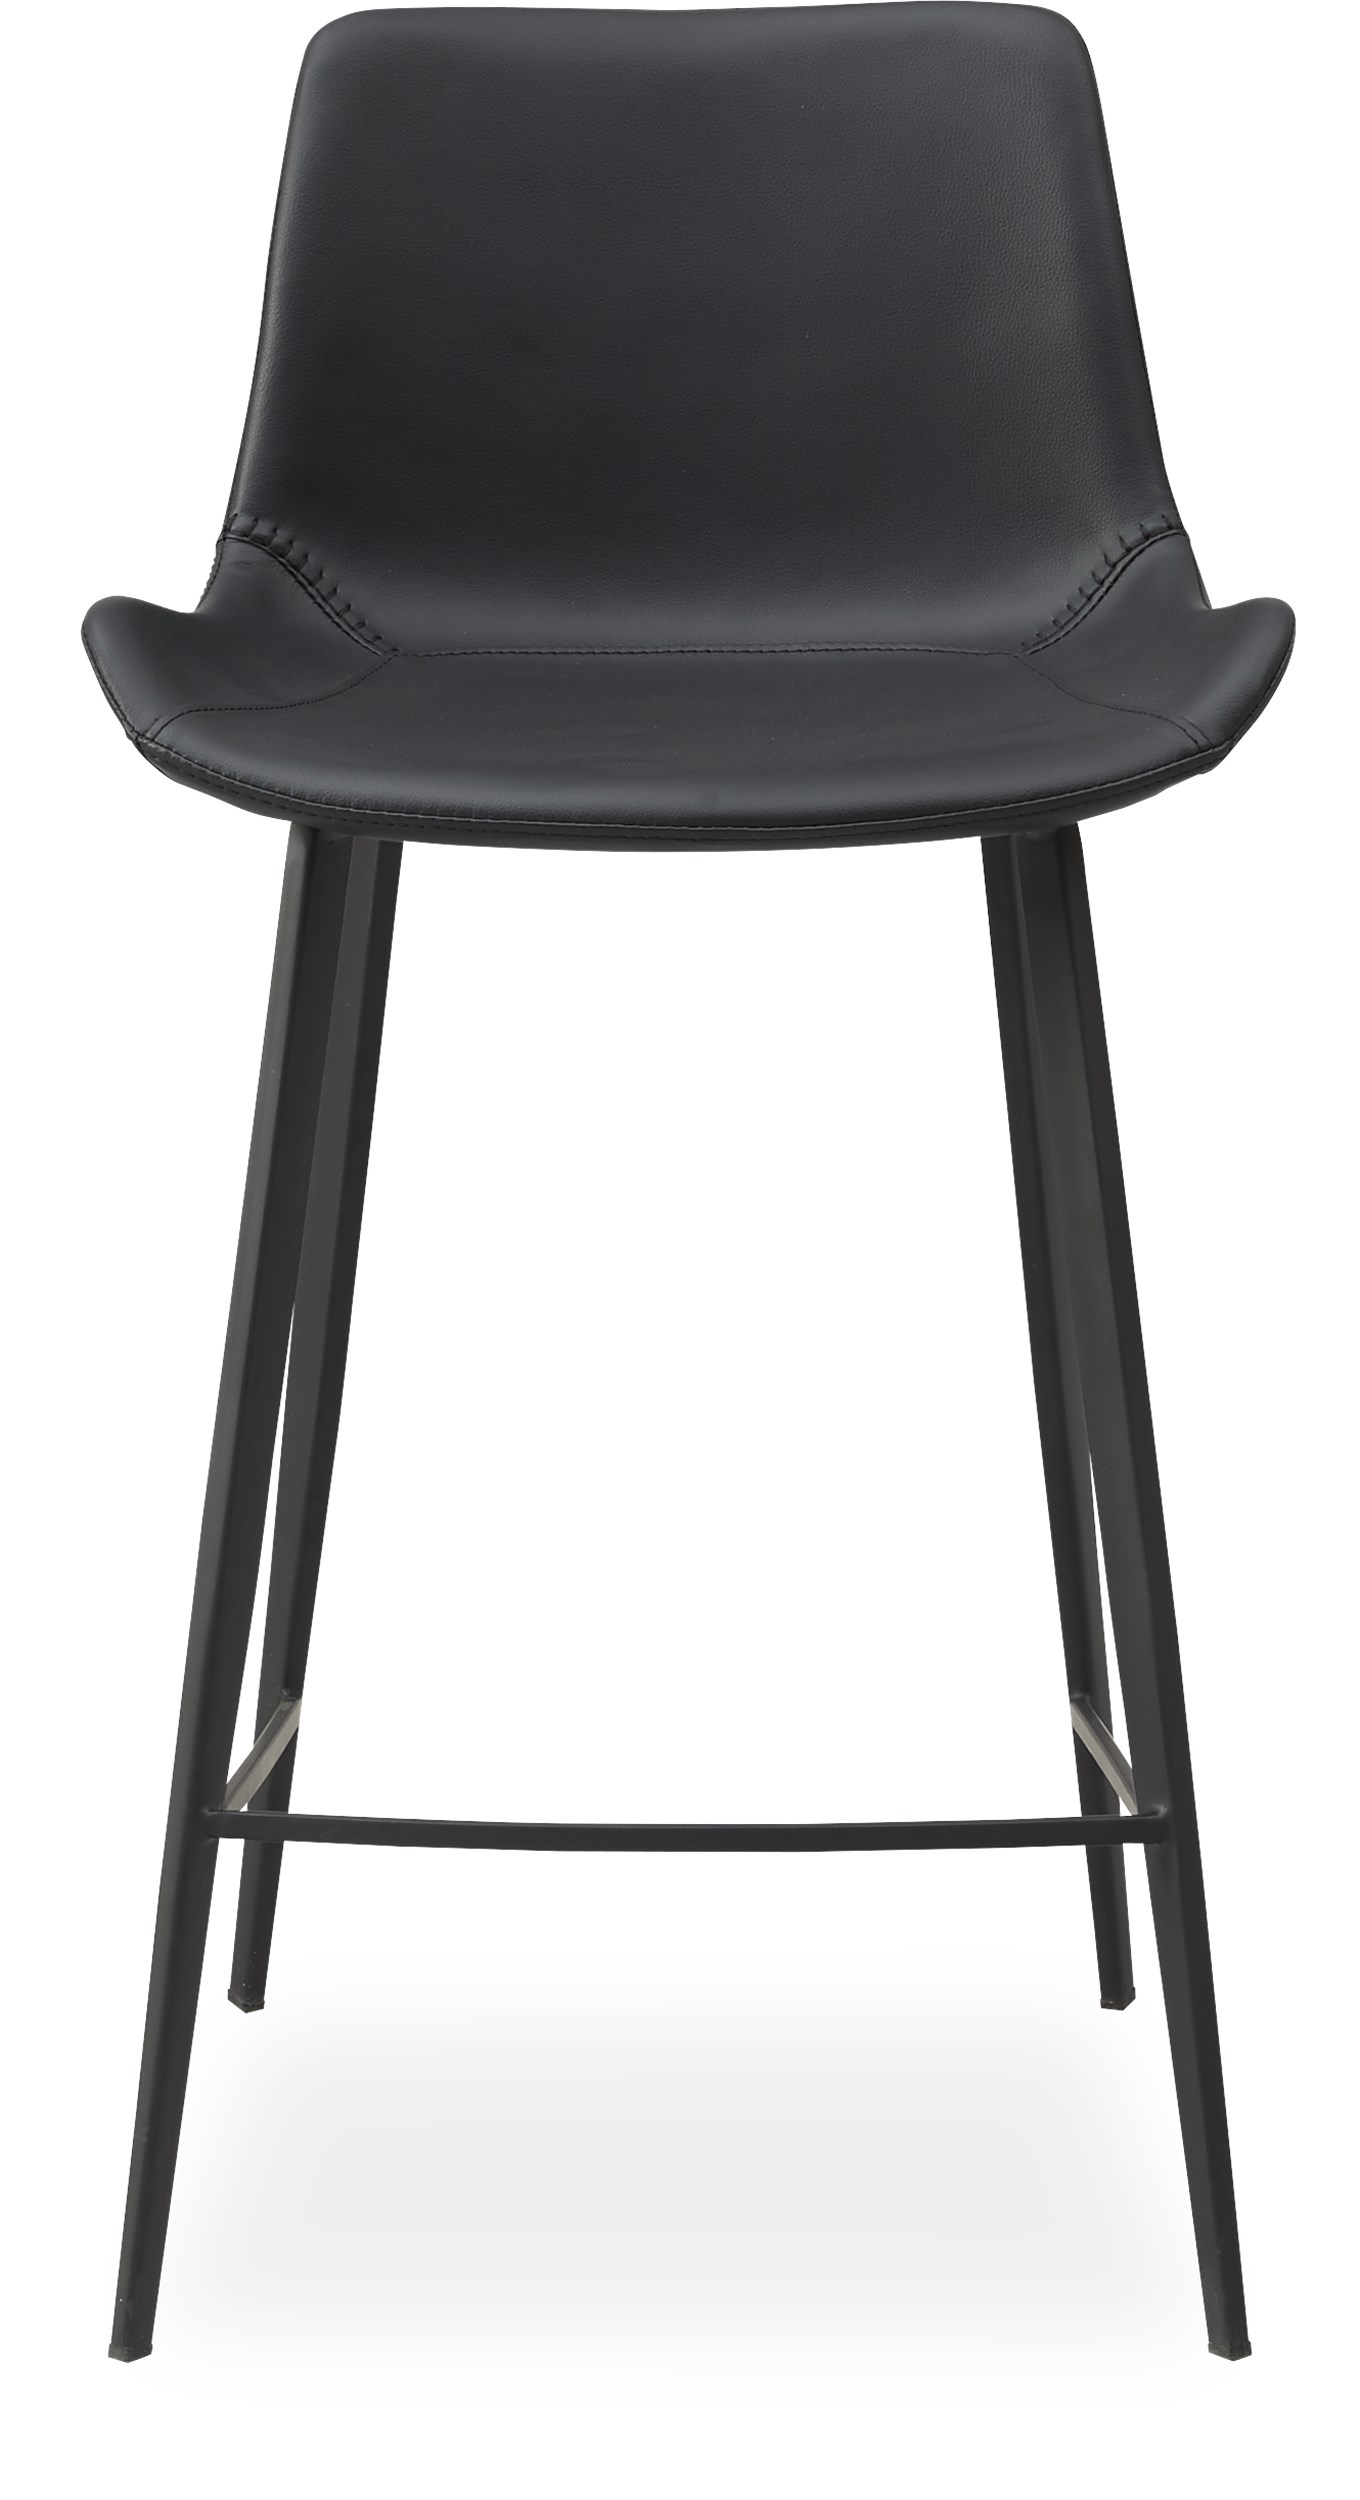 Hype Counterstol - Sæde i sort kunstlæder og ben i sortlakeret metal